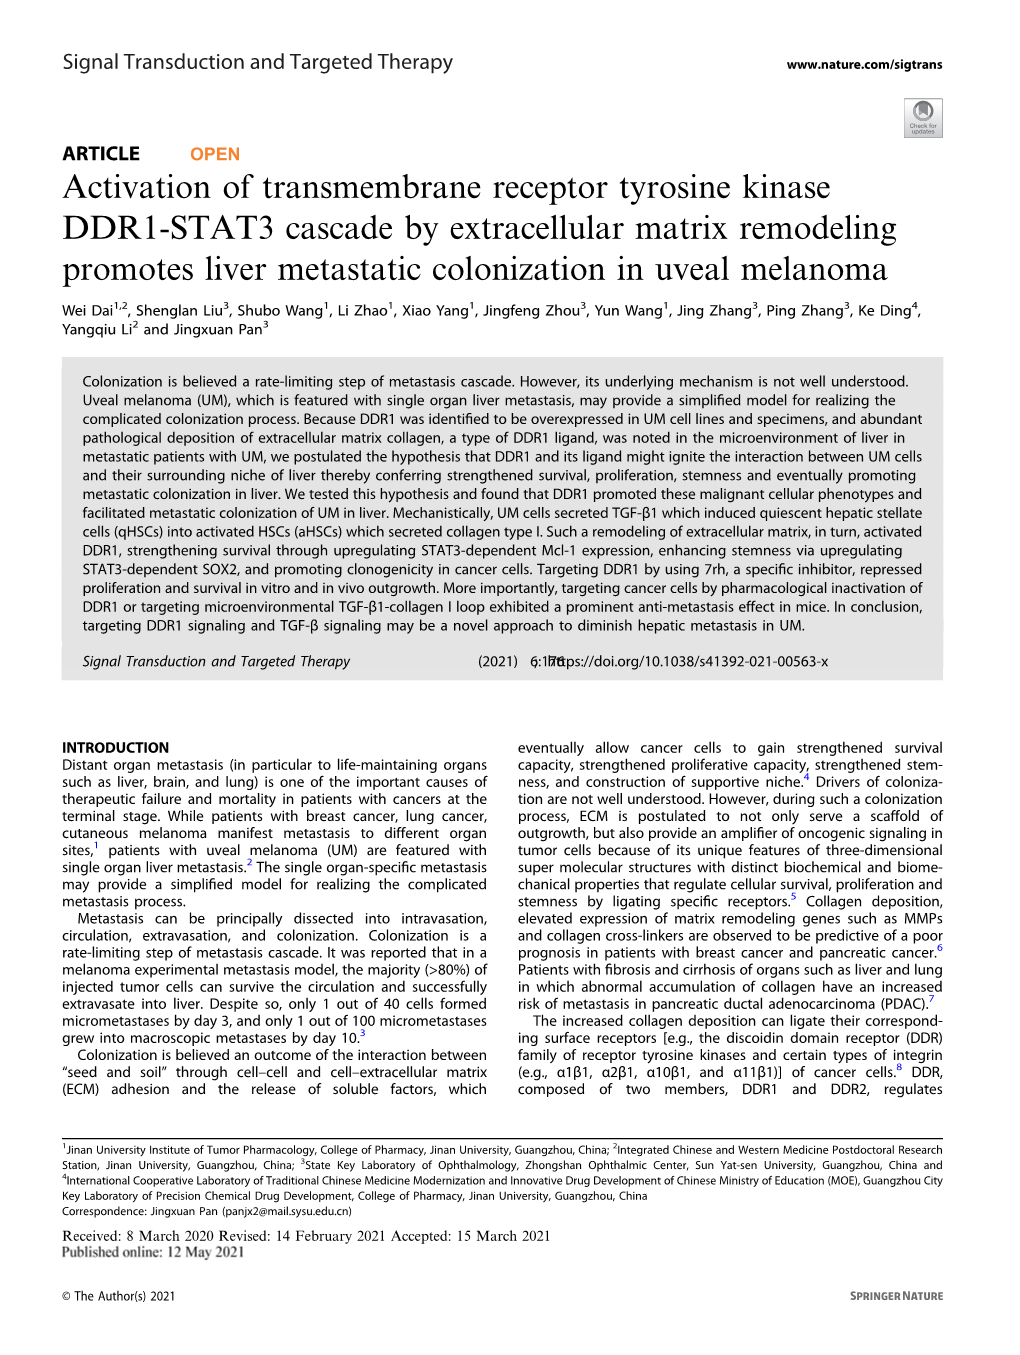 Activation of Transmembrane Receptor Tyrosine Kinase DDR1-STAT3 Cascade by Extracellular Matrix Remodeling Promotes Liver Metastatic Colonization in Uveal Melanoma